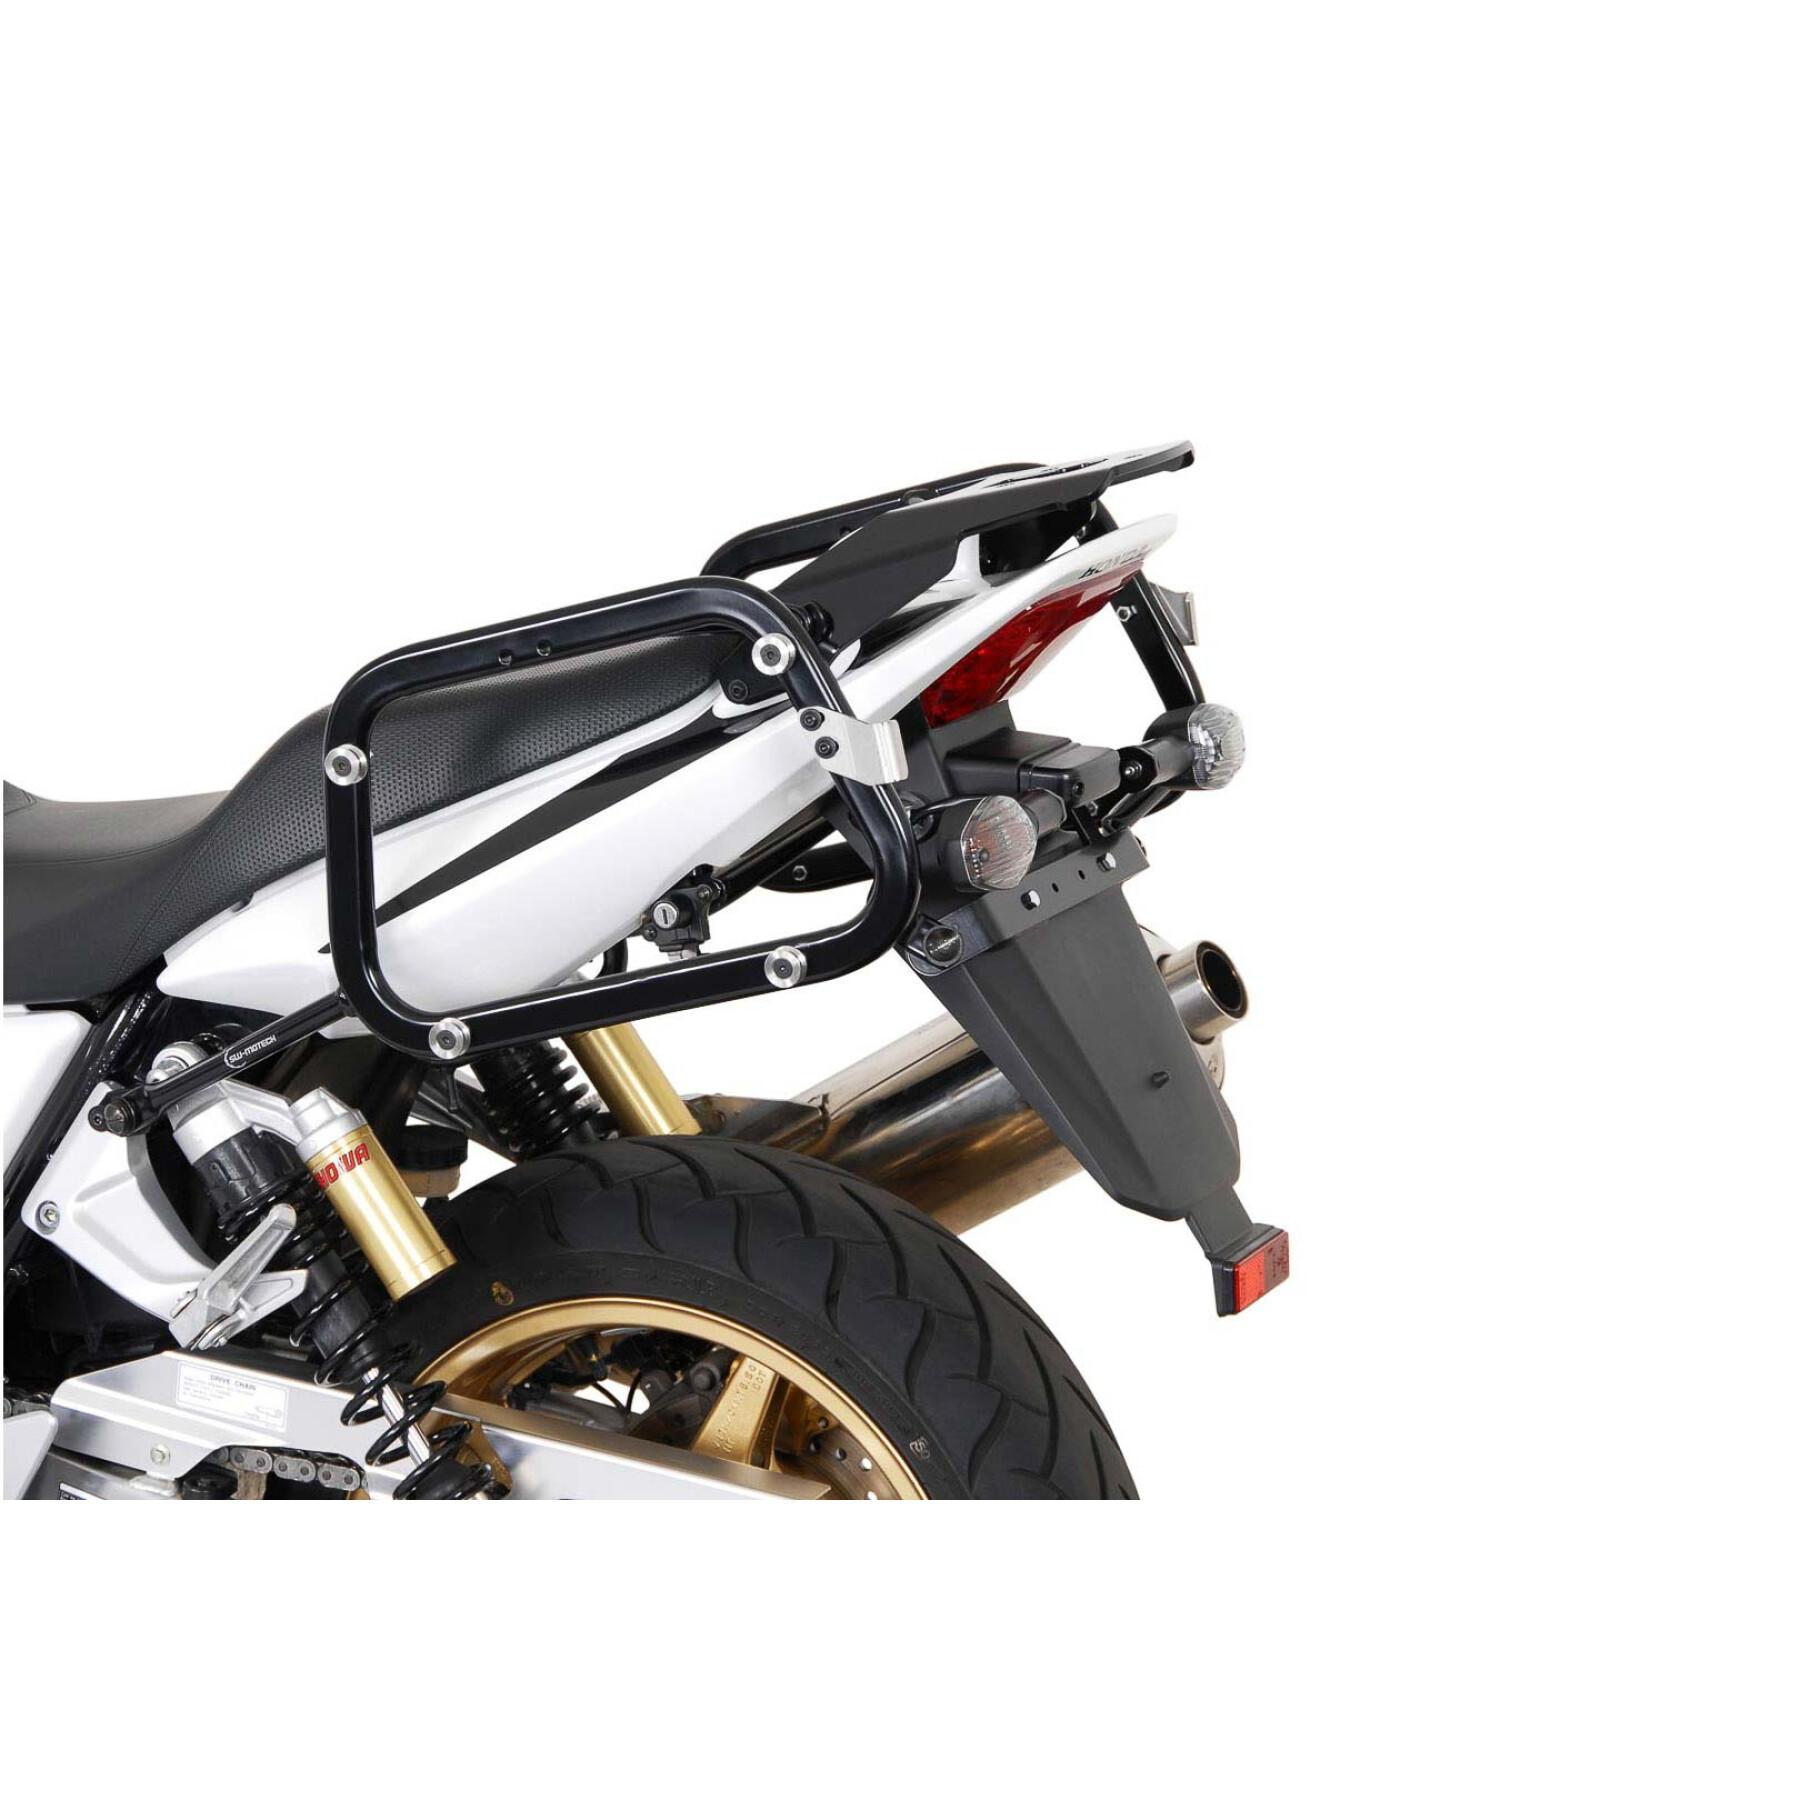 Soporte de la maleta lateral de la moto Sw-Motech Evo. Honda Cb 1300 (03-09)/ S (05-09)